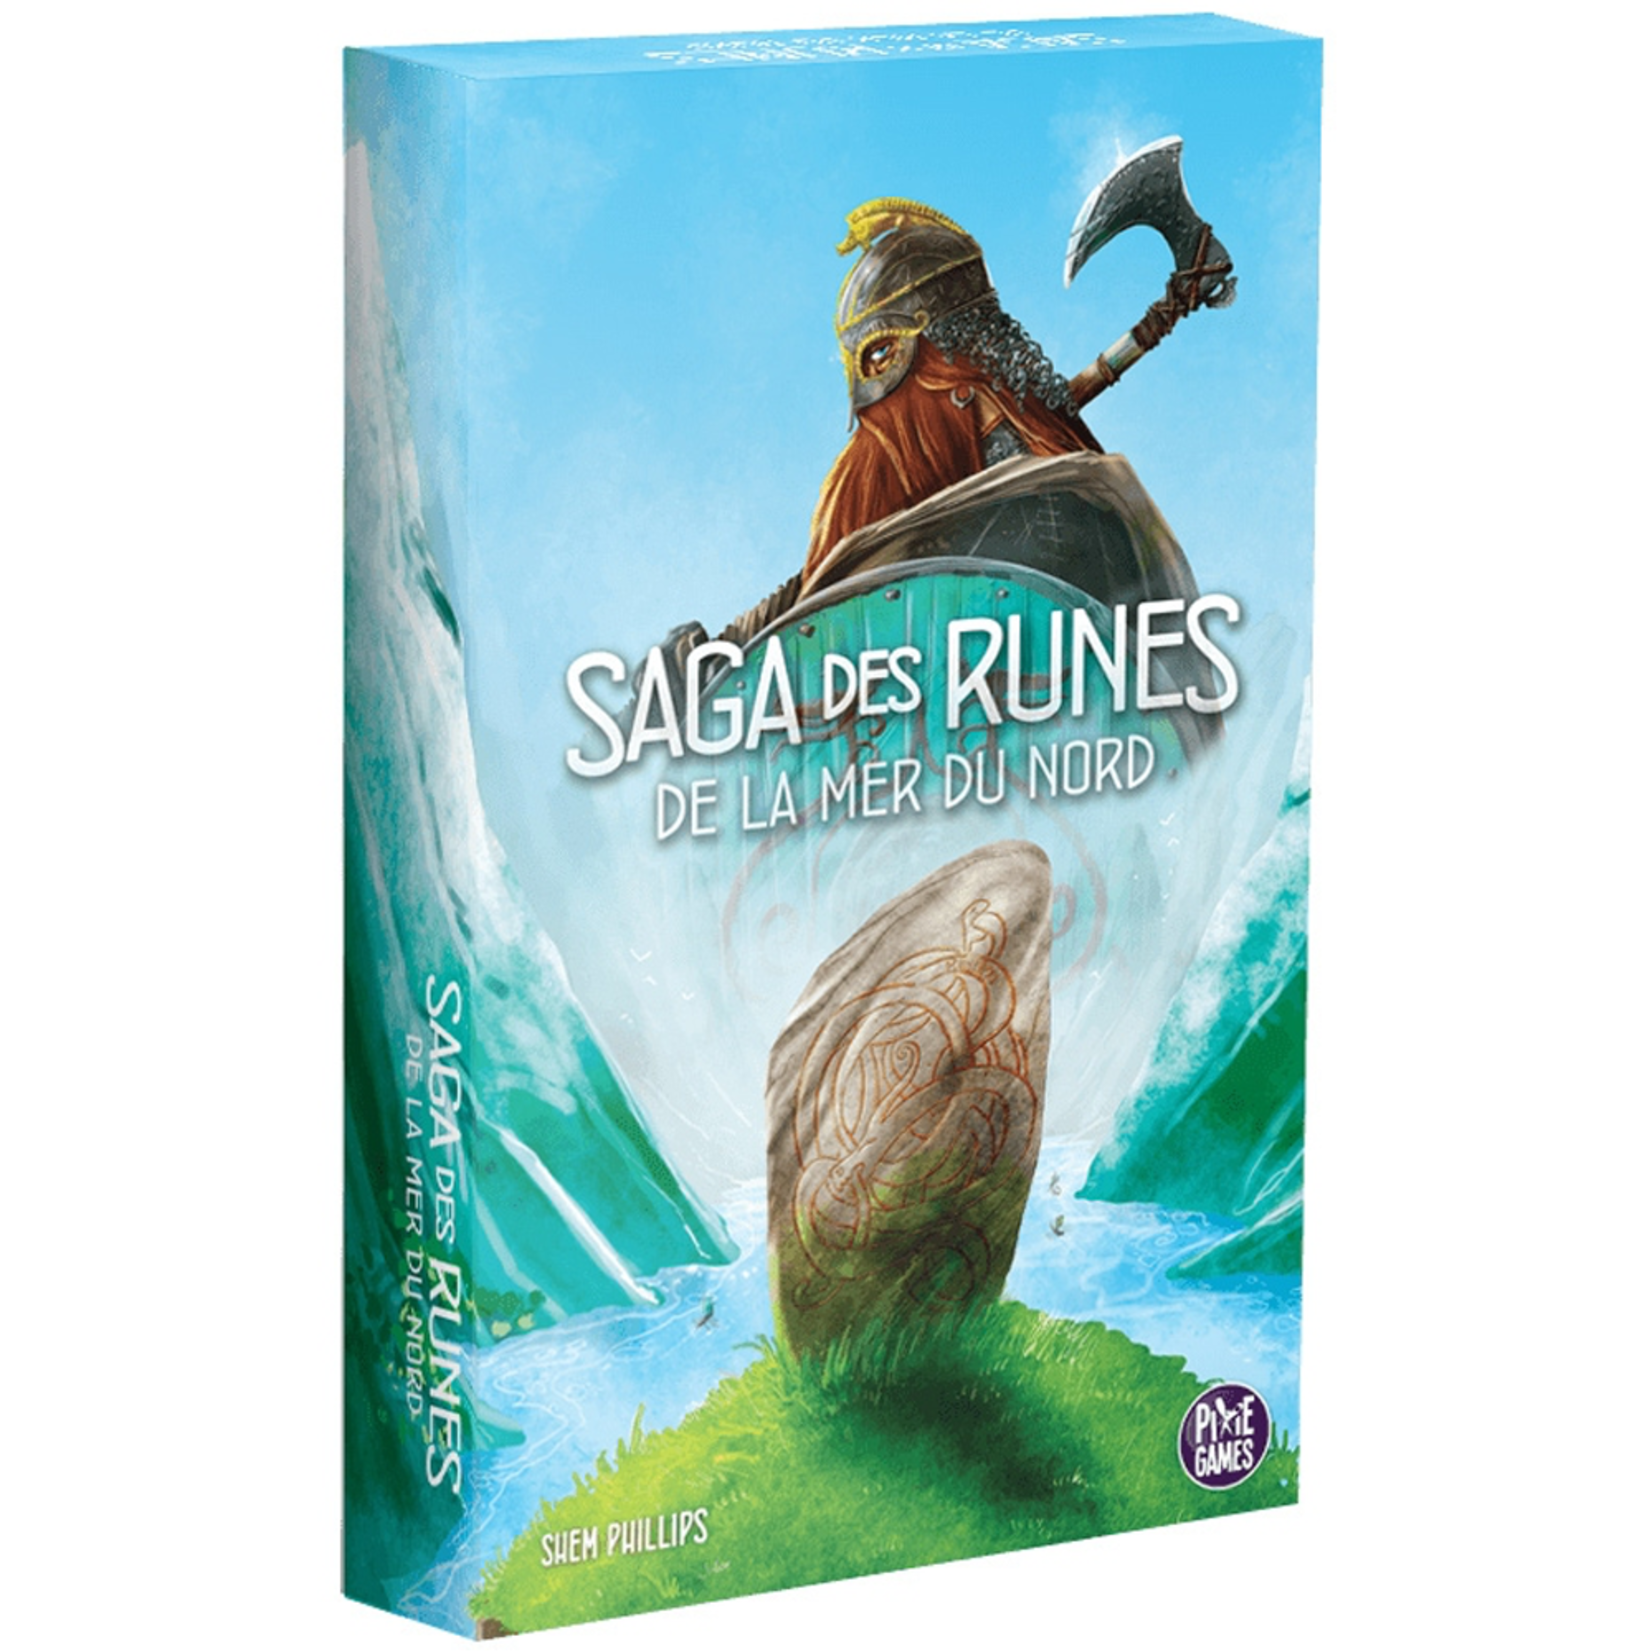 Pixie Games Saga des Runes de la Mer du Nord